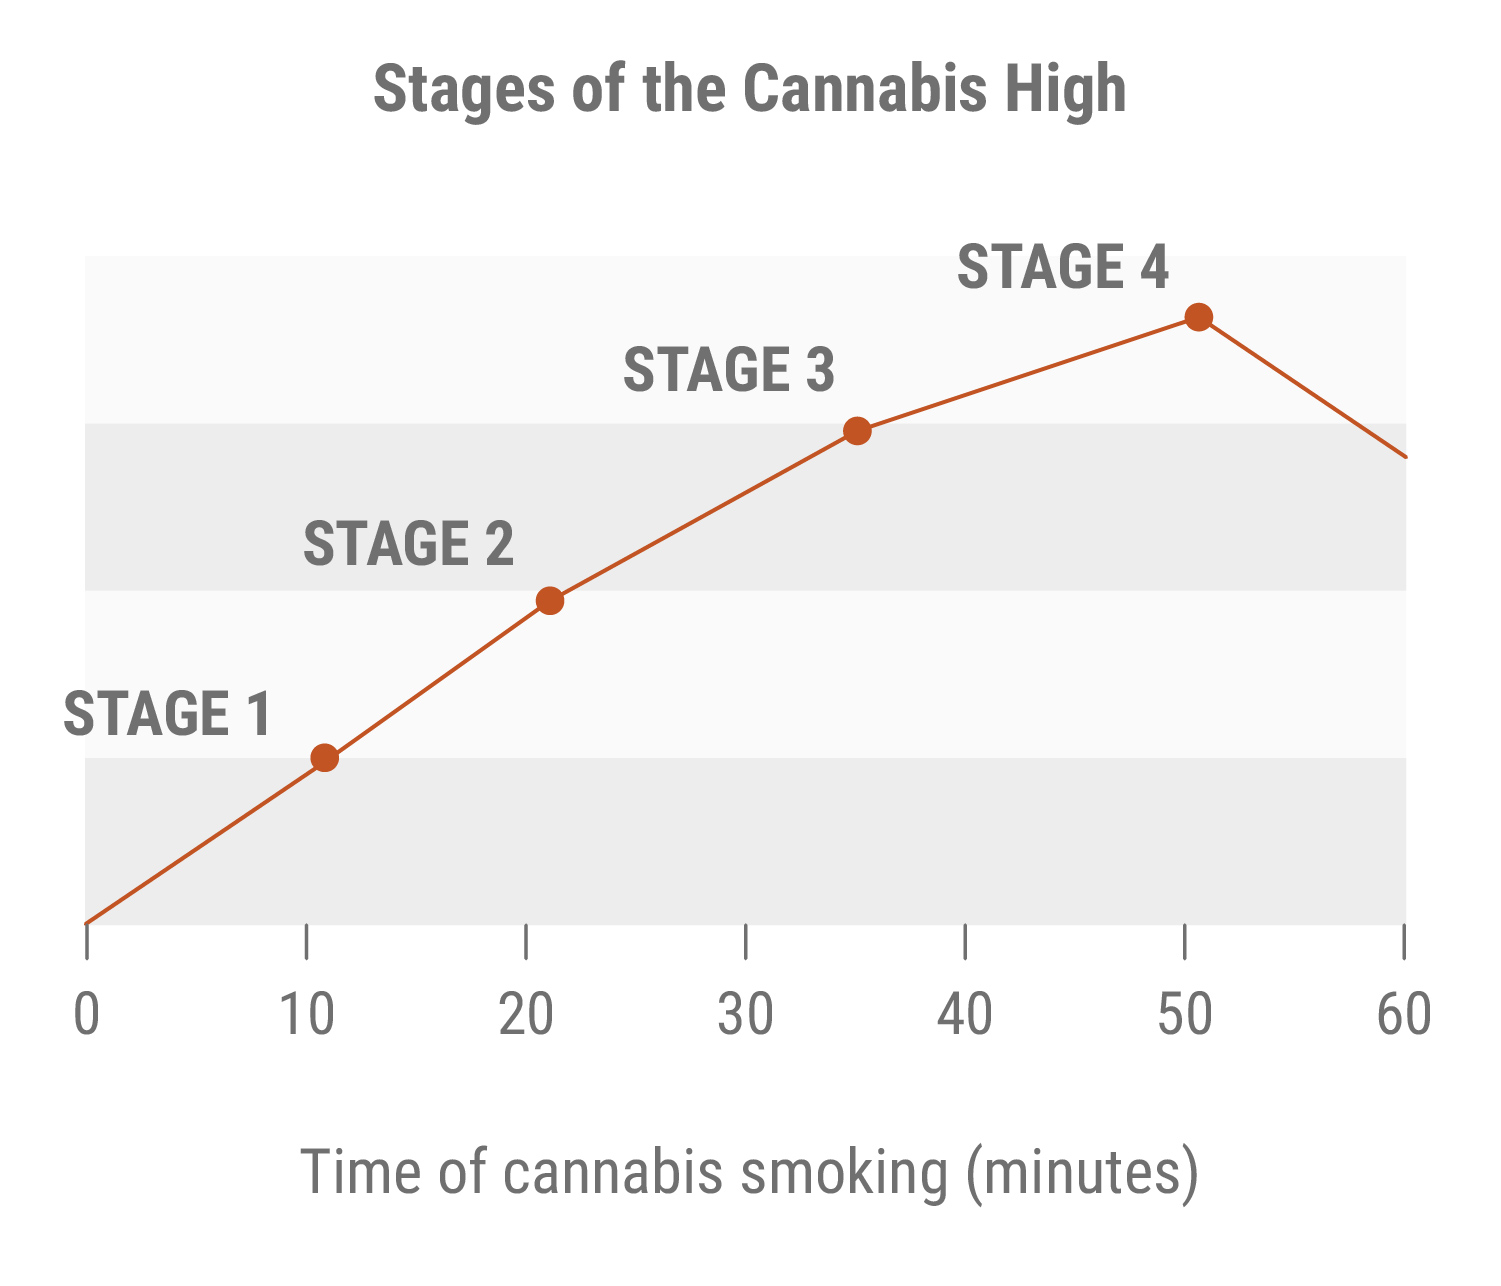 Stadia van de Cannabis-high